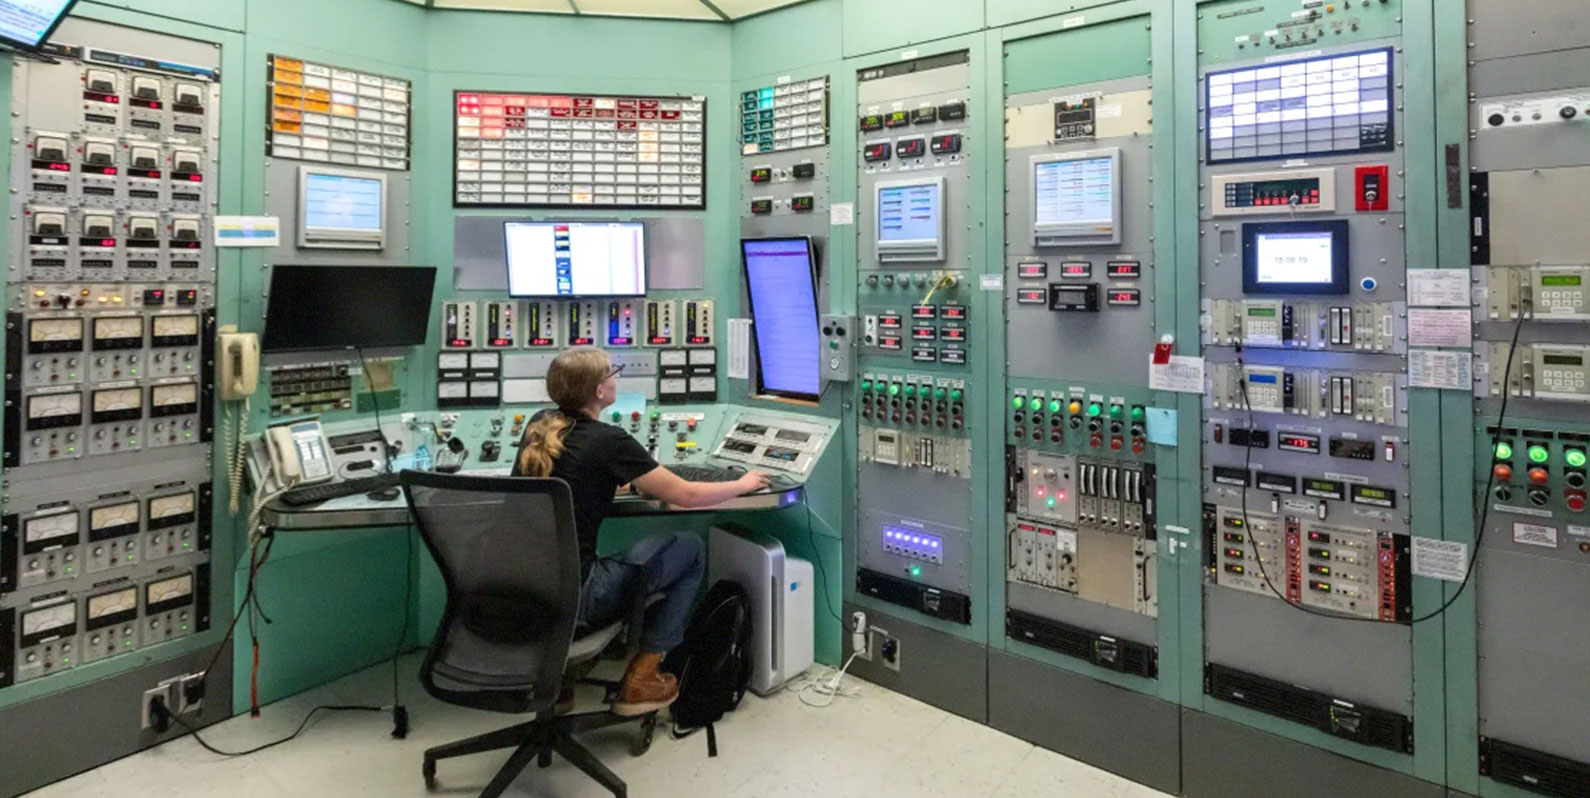 Por dentro do laboratório de reatores nucleares do MIT